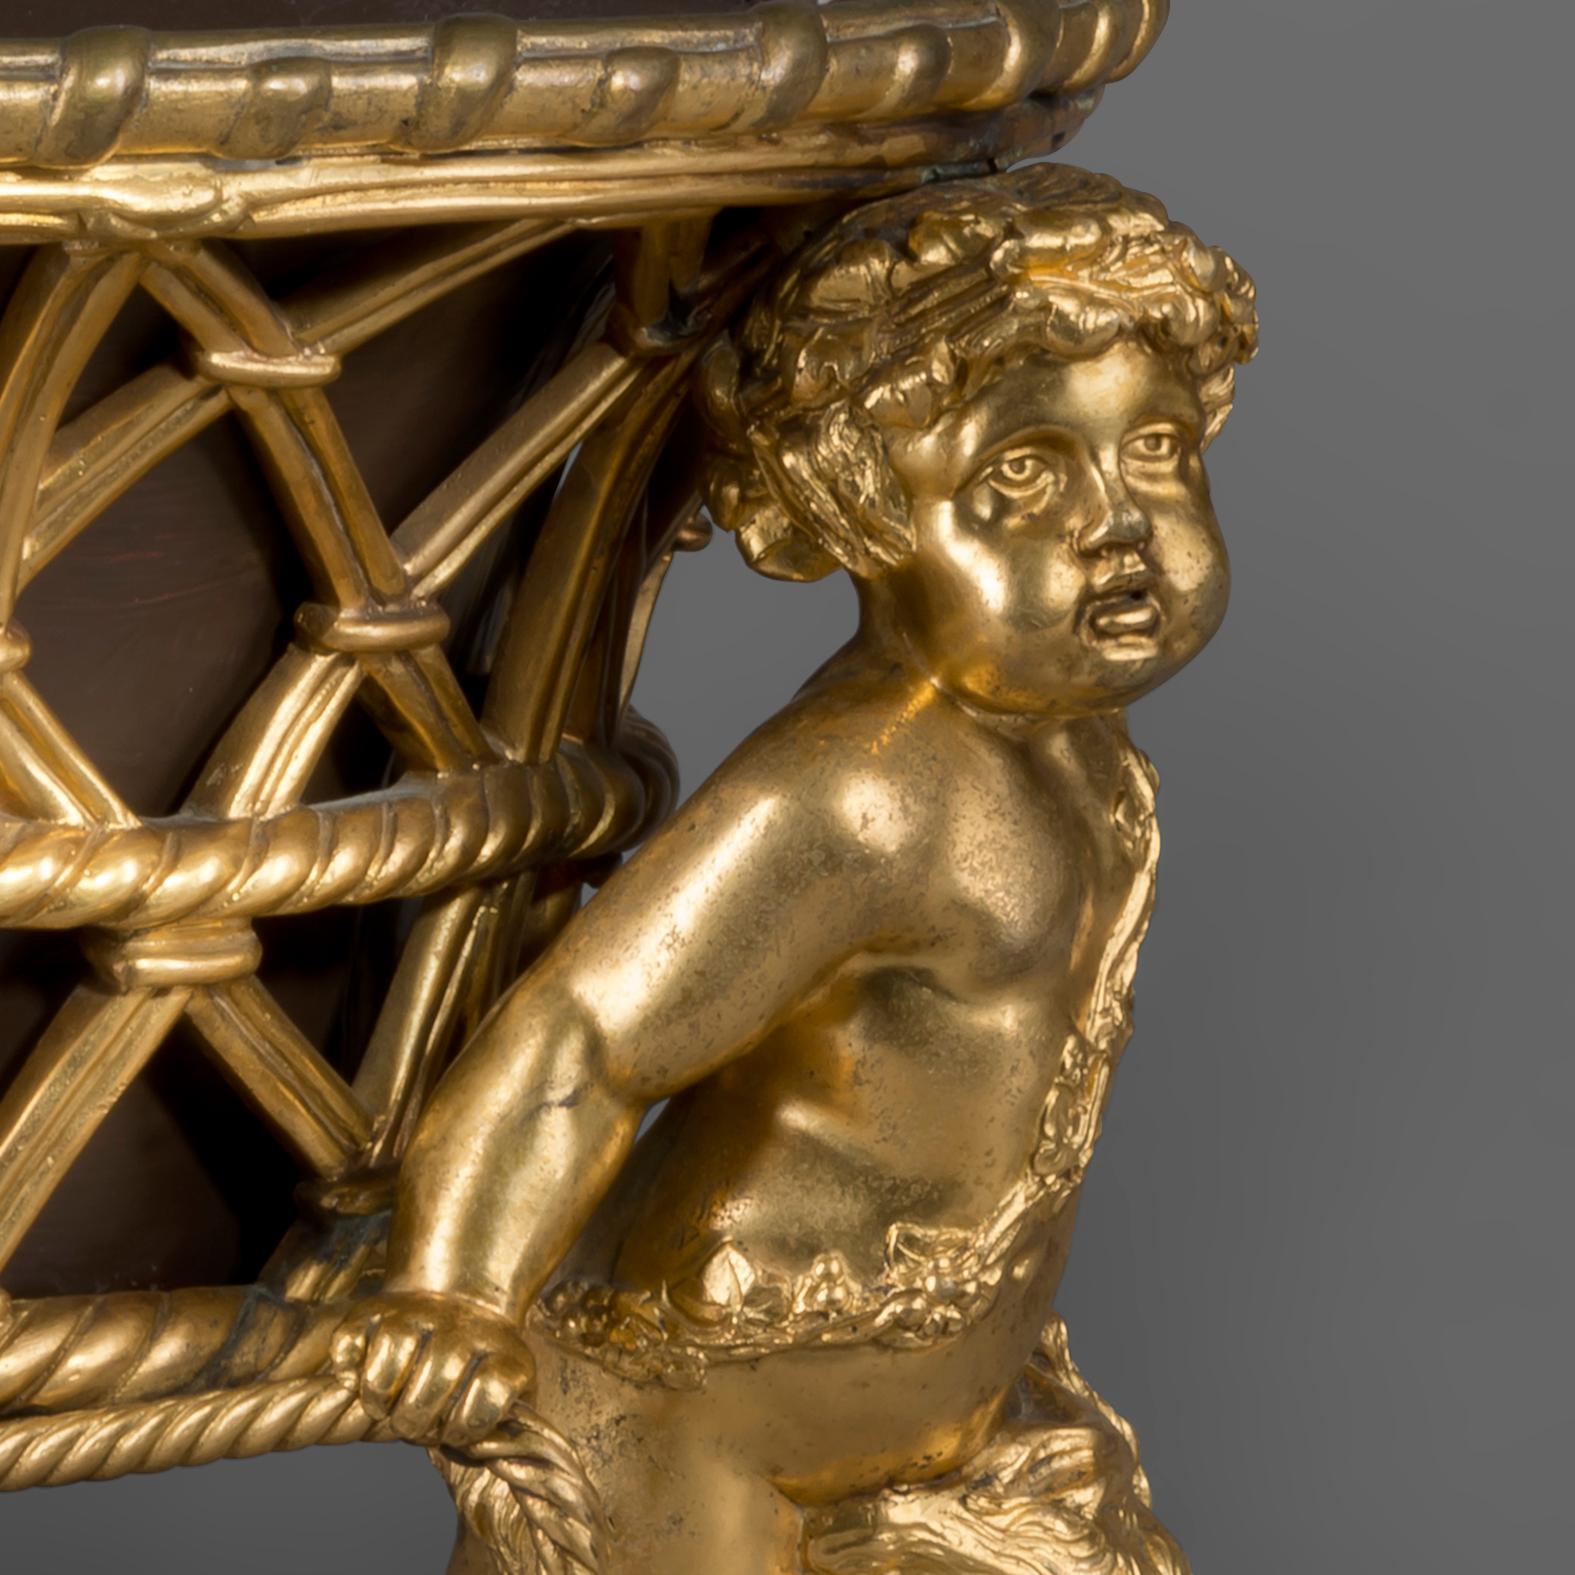 Jardinière de style Louis XV en bronze doré par la Maison Alphonse Giroux.

Estampillé 